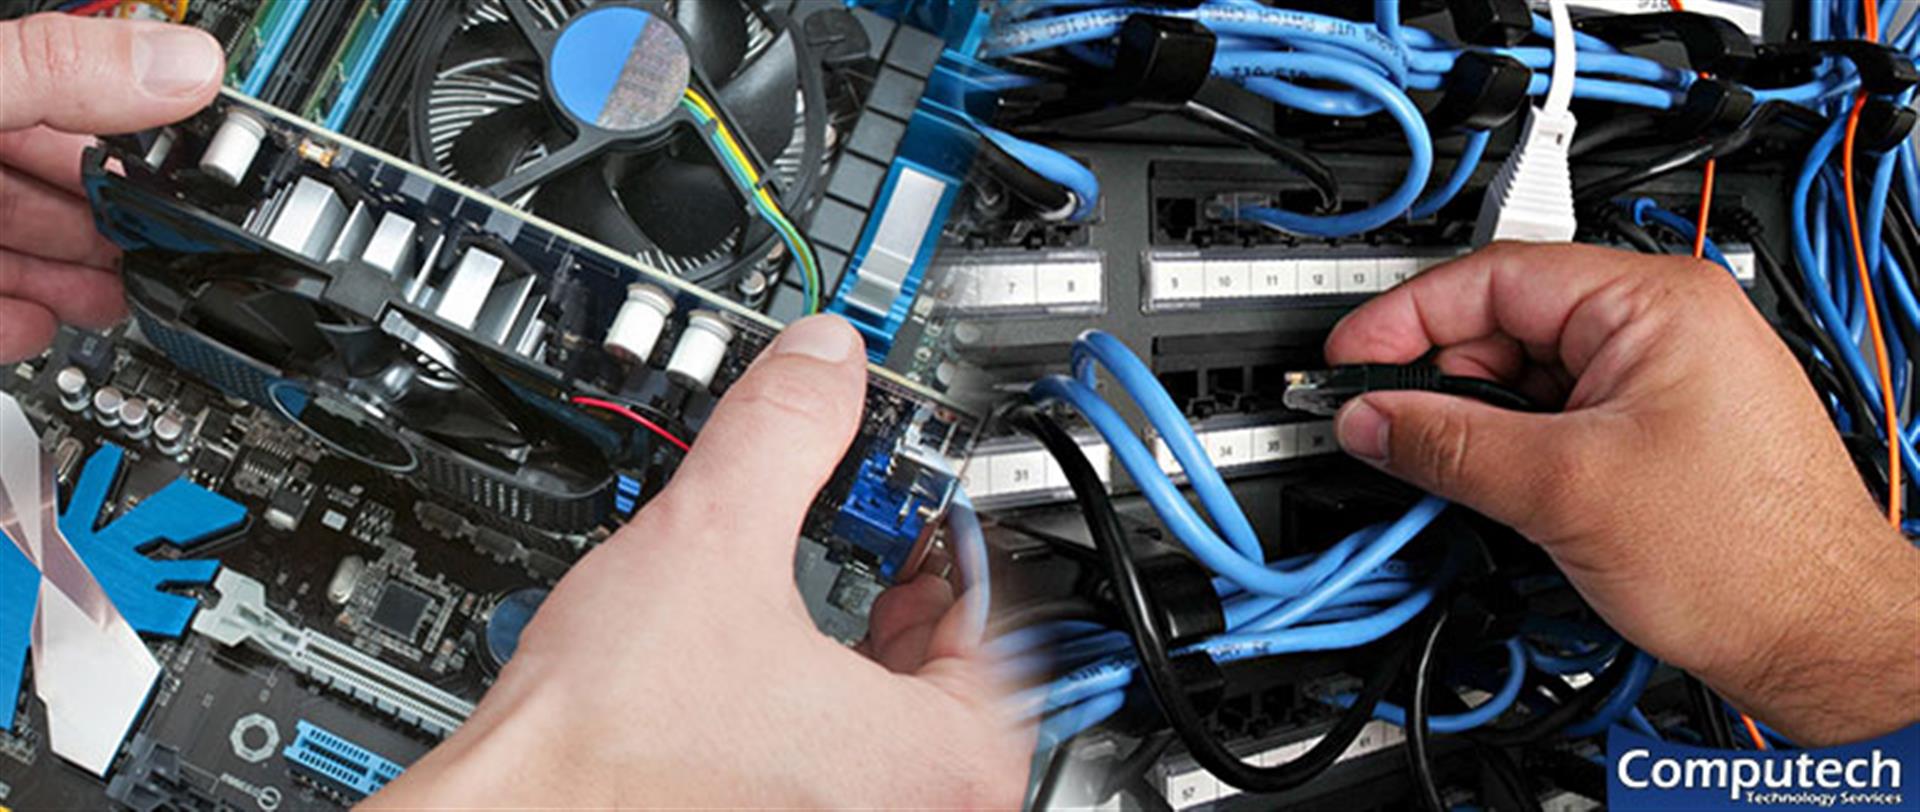 Dacula Georgia Onsite Computer & Printer Repair, Network, Voice & Data Cabling Solutions